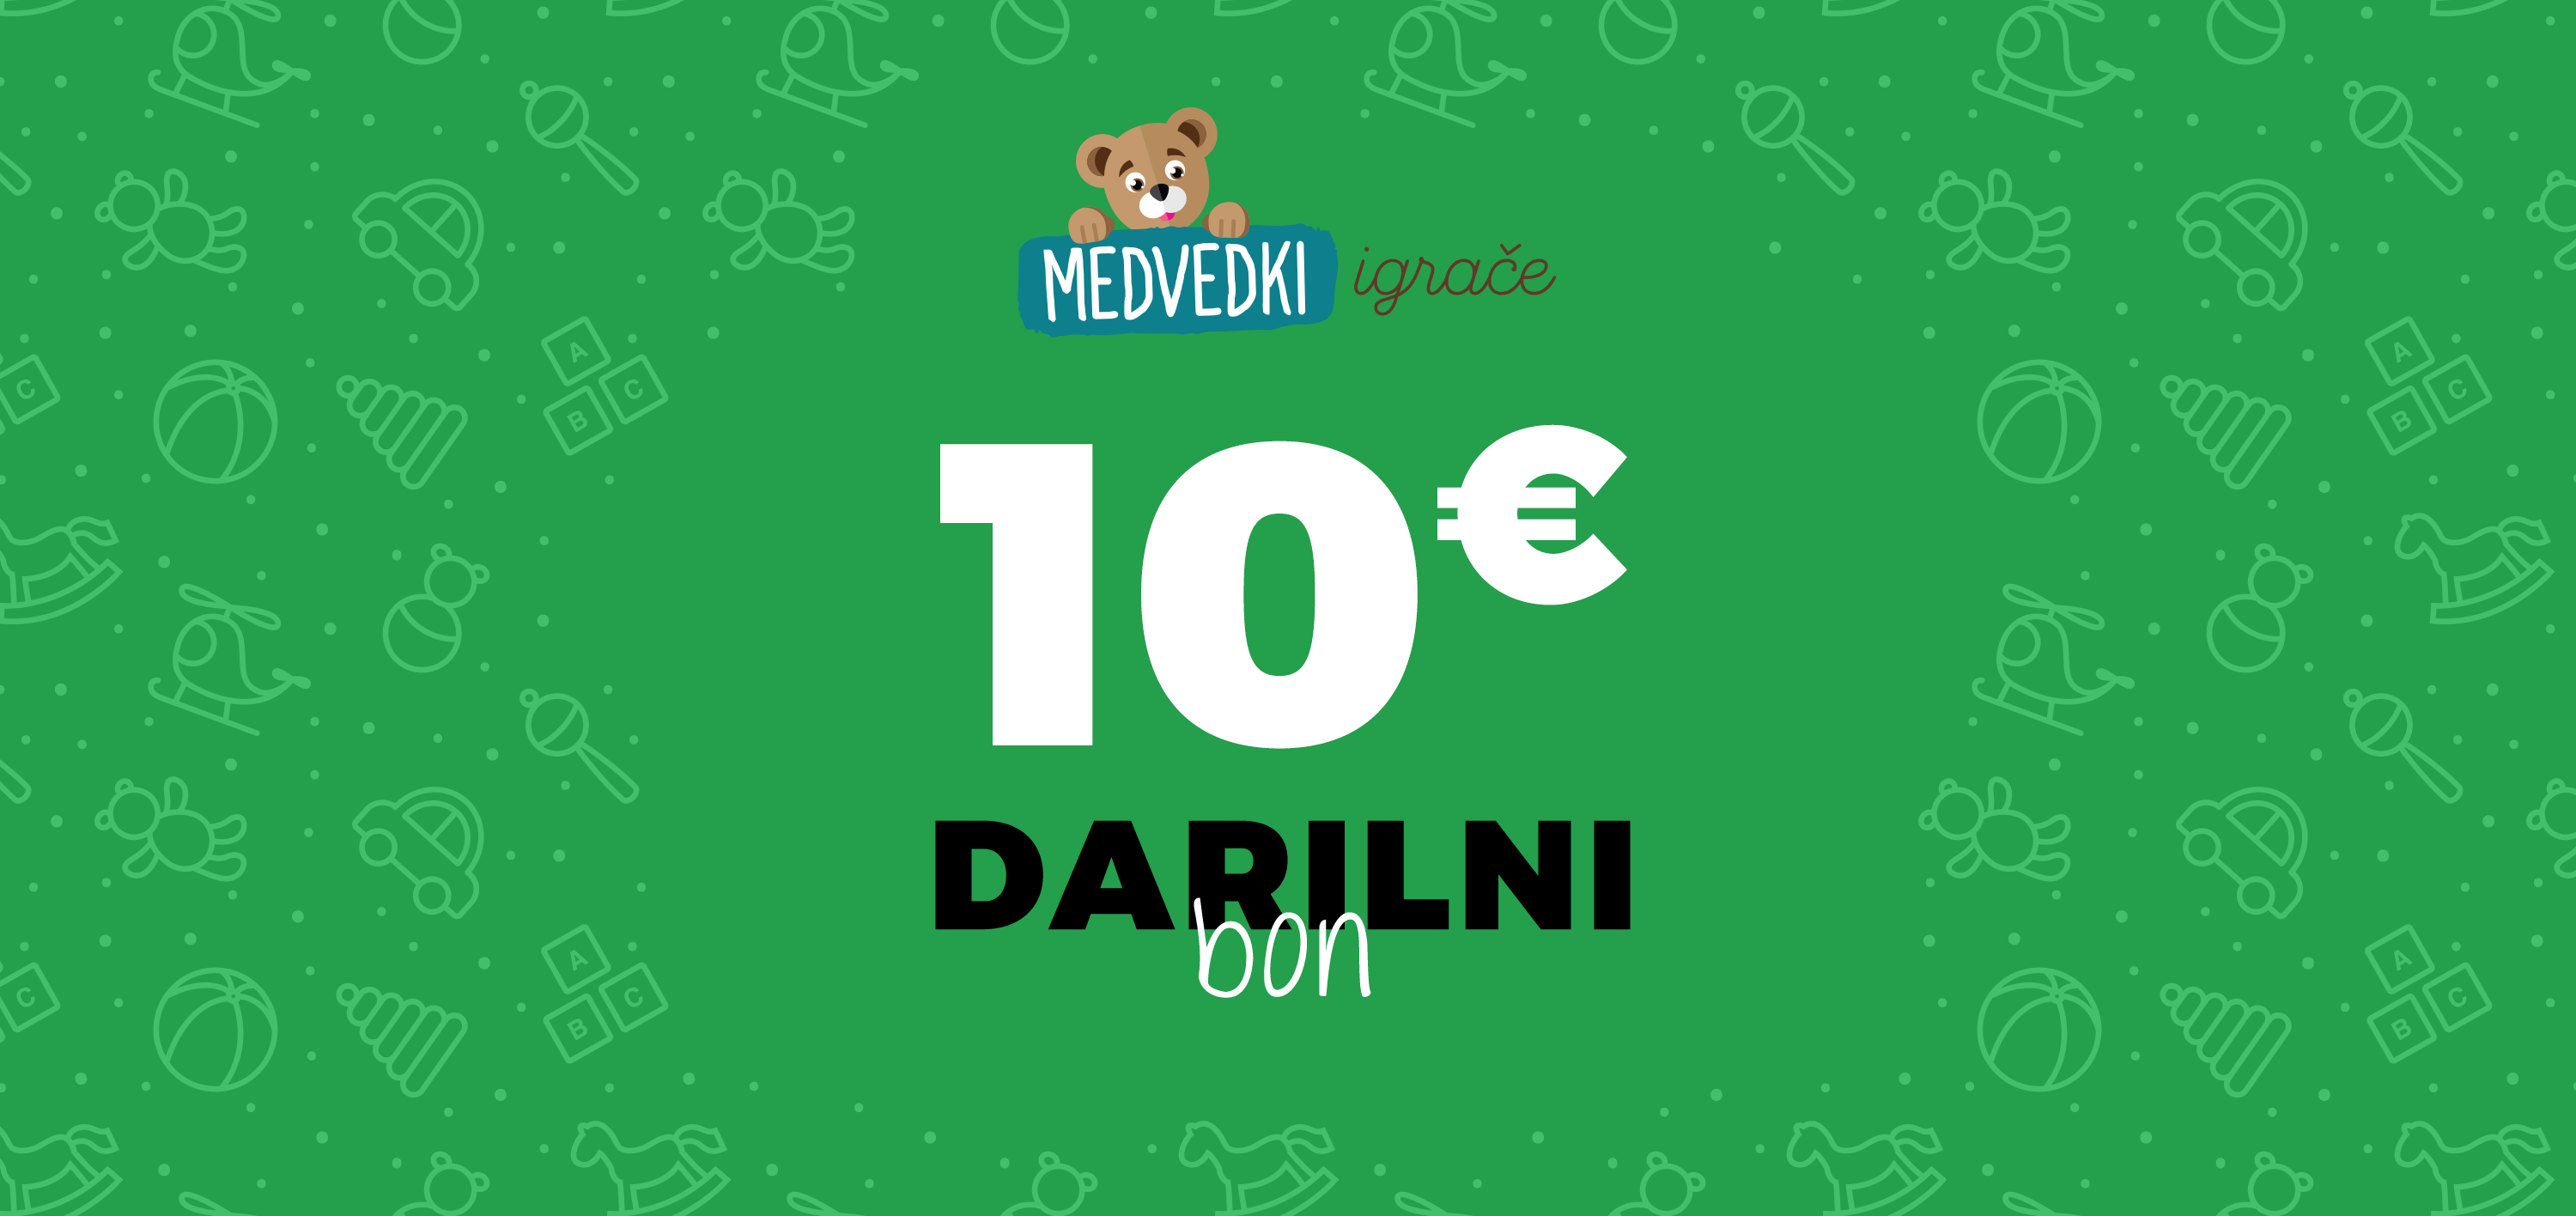 Darilni boni - Darilni bon 10€ 